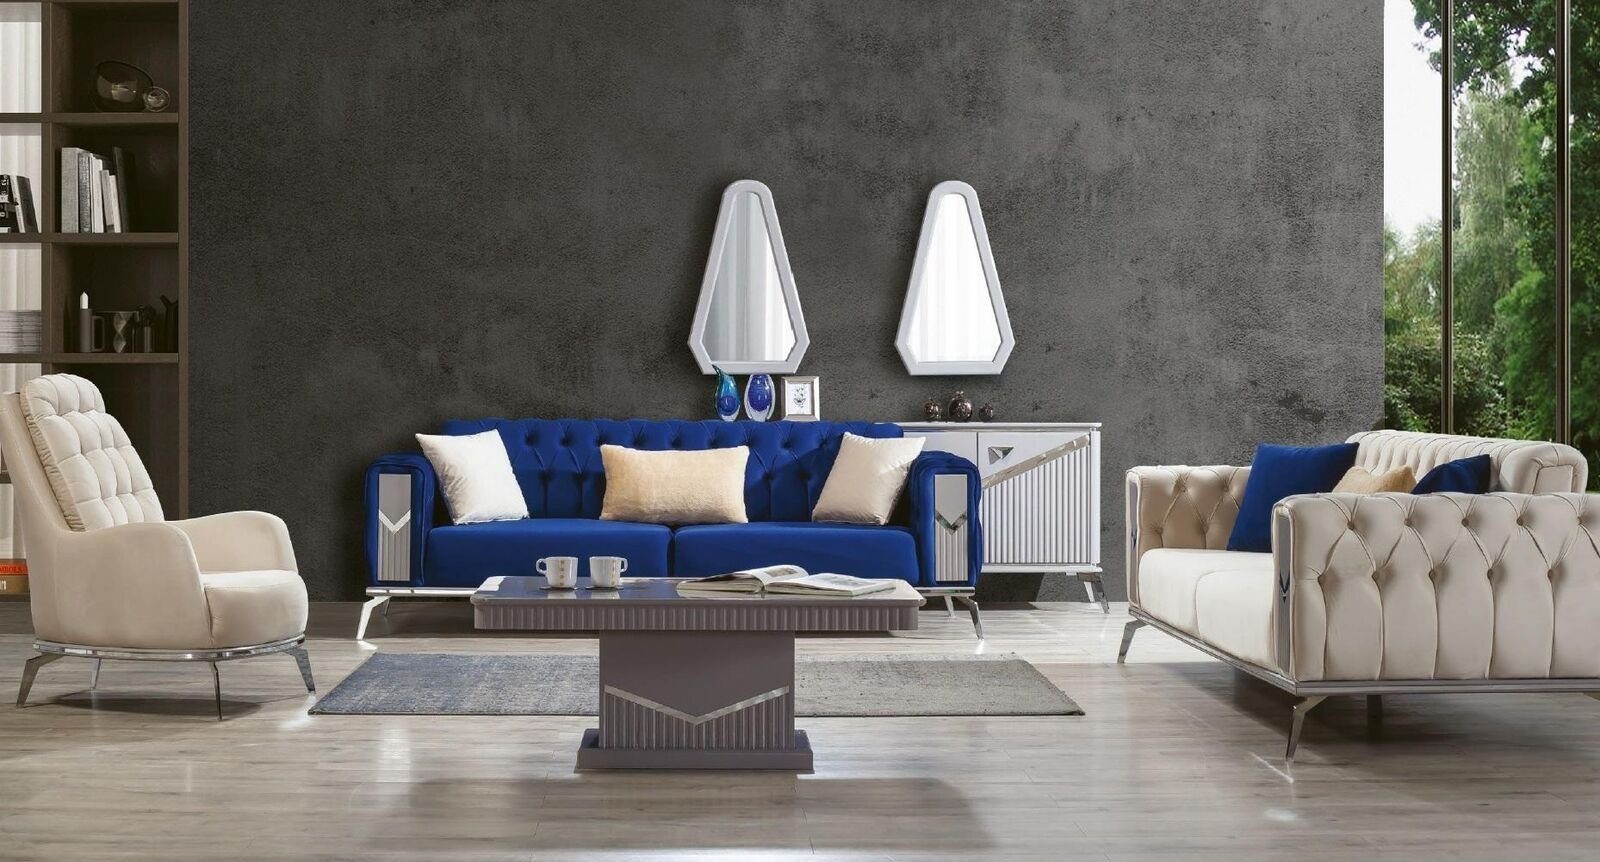 Möbel In Couch Set Wohnzimmer 3tlg. JVmoebel Europe Garnituren, 3+3+1 Sofagarnitur Polster Sofa Made